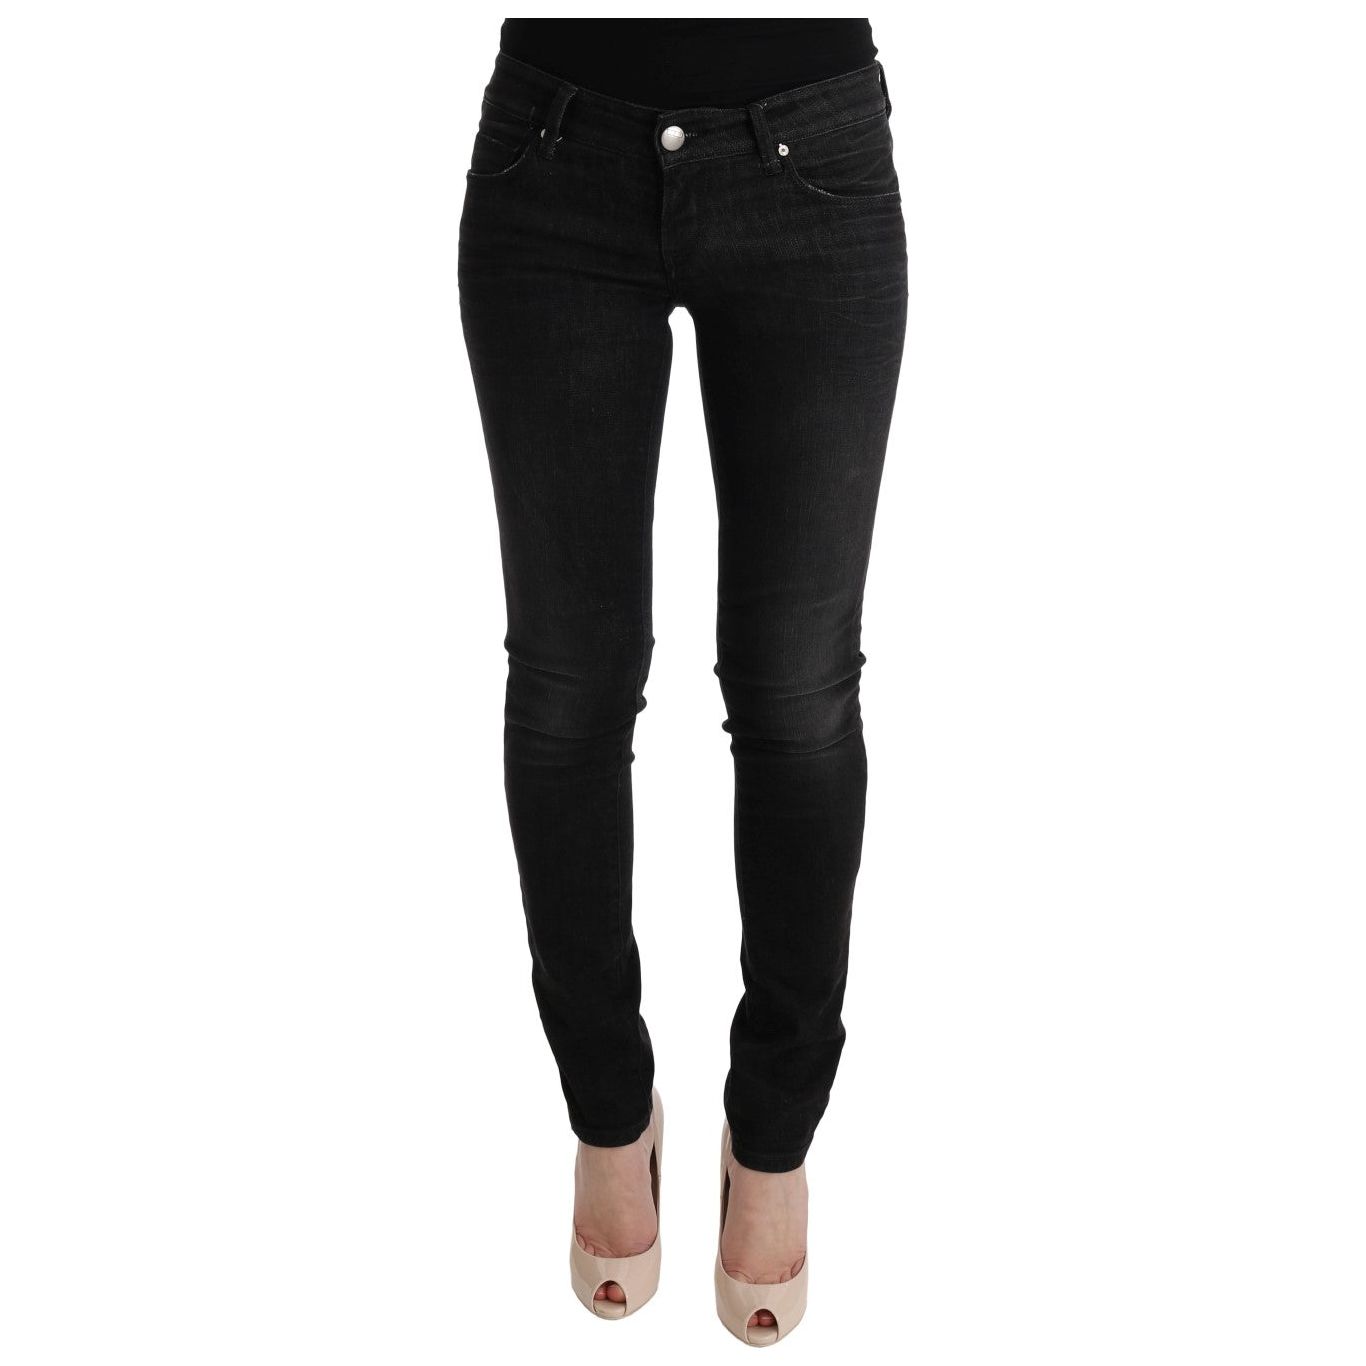 Acht Chic Slim Fit Black Cotton Jeans Jeans & Pants black-denim-cotton-bottoms-slim-fit-jeans